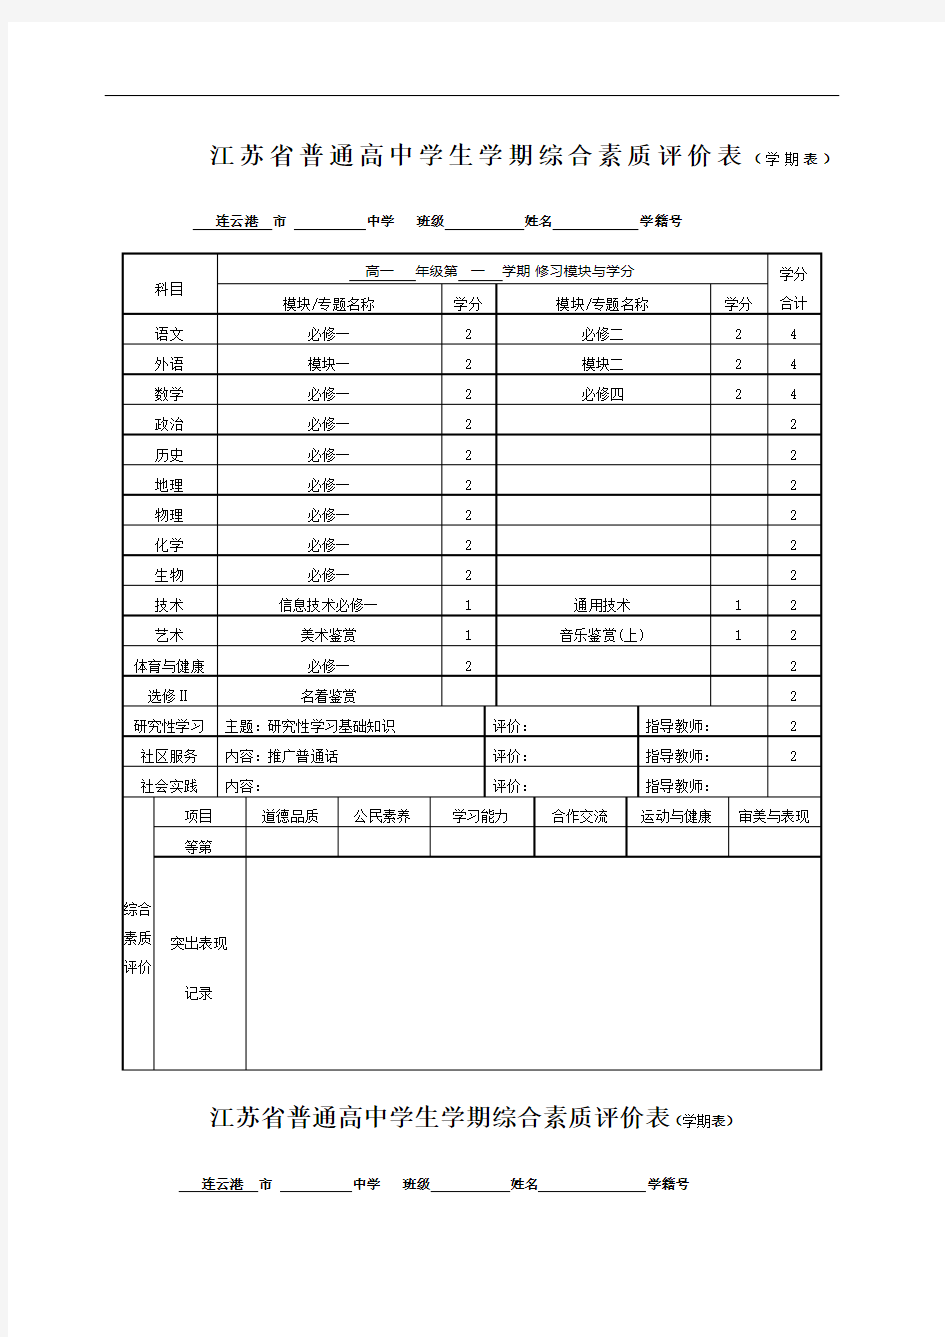 江苏普通高中学生学期综合素质评价表学期表